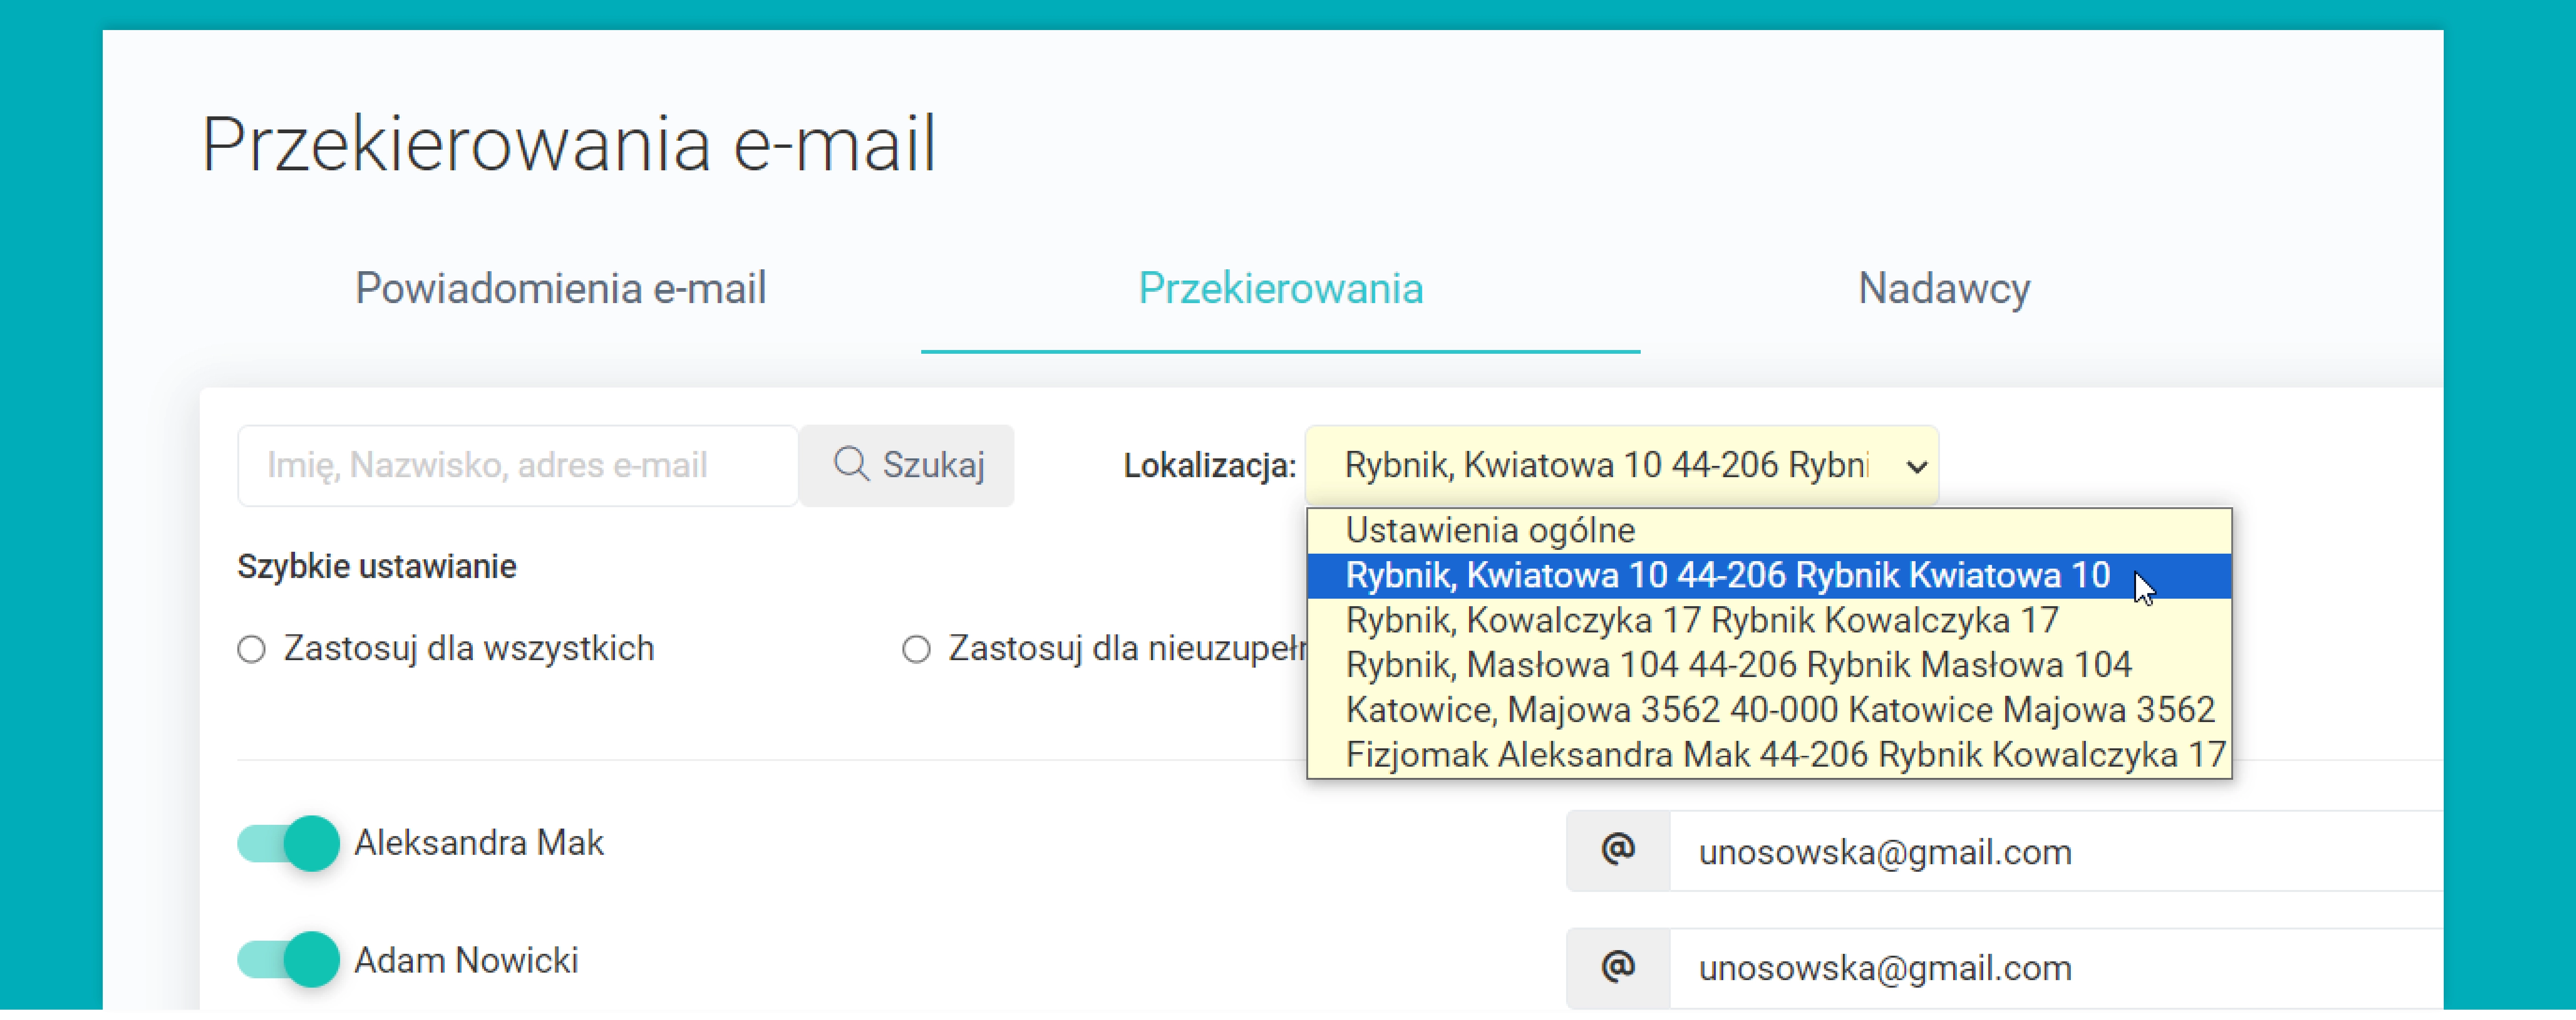 Przekierowania e-mail według lokalizacji